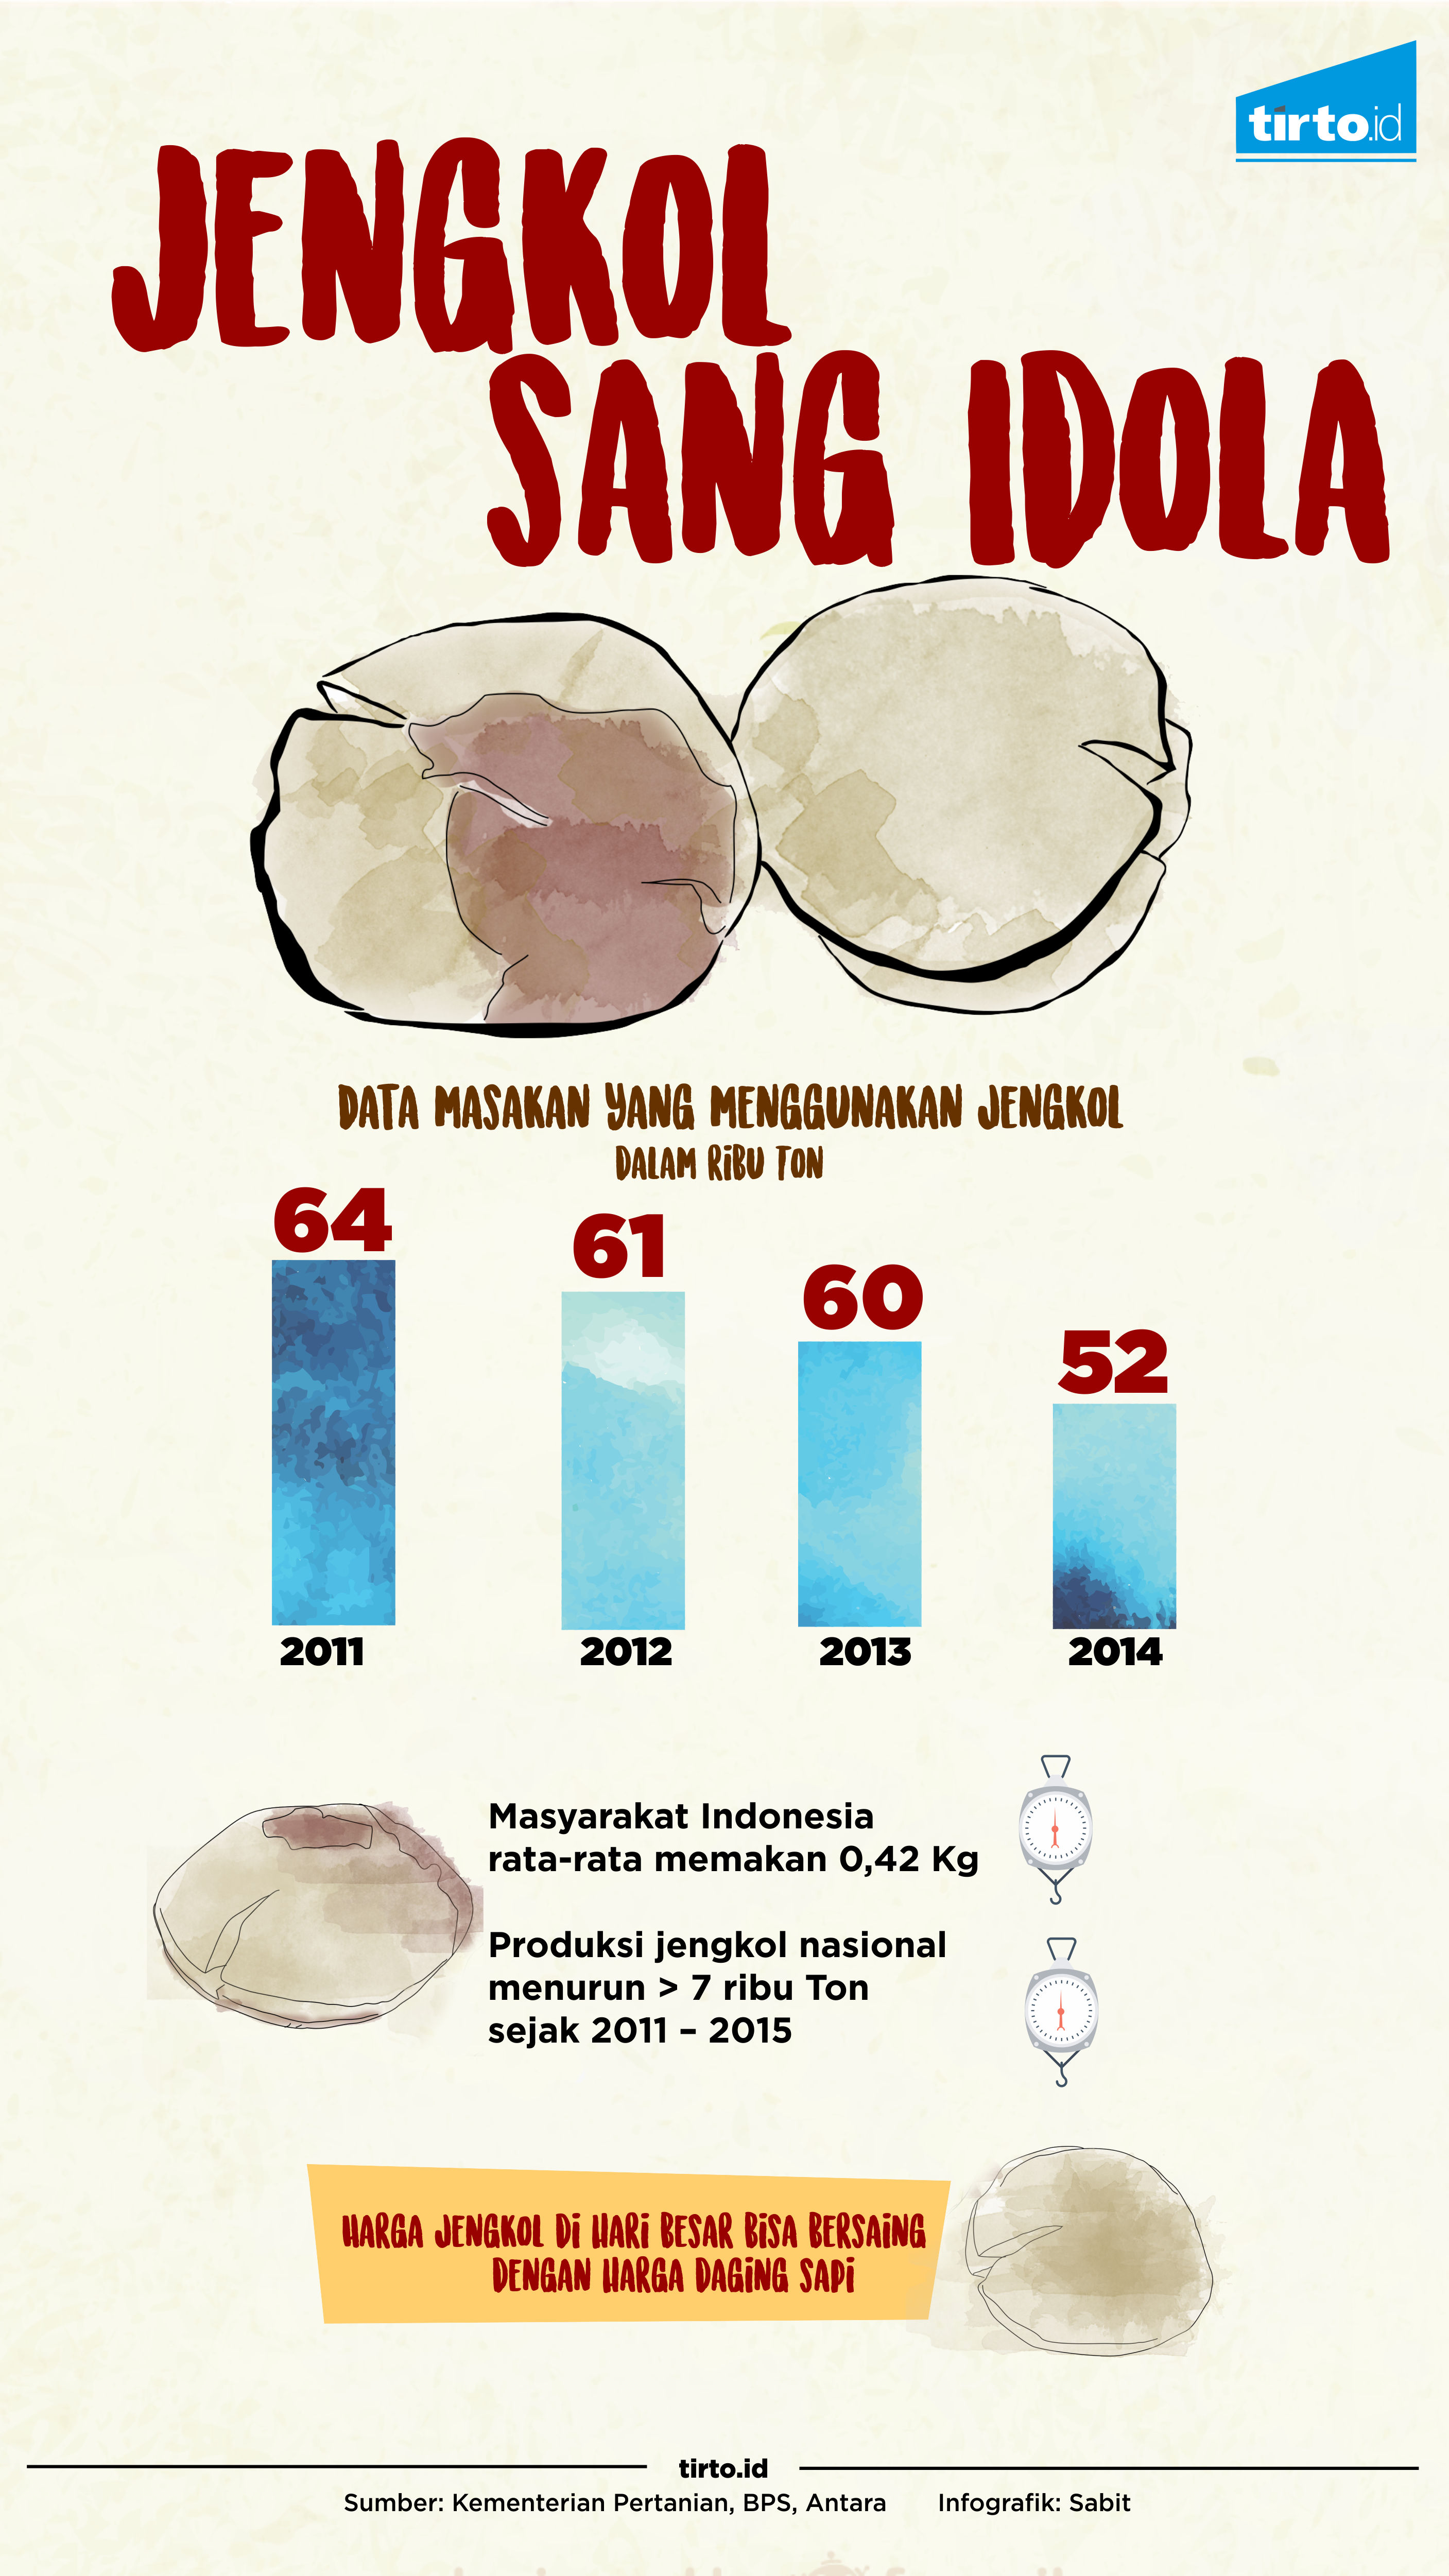 Infografik Jengkol Sang Idola